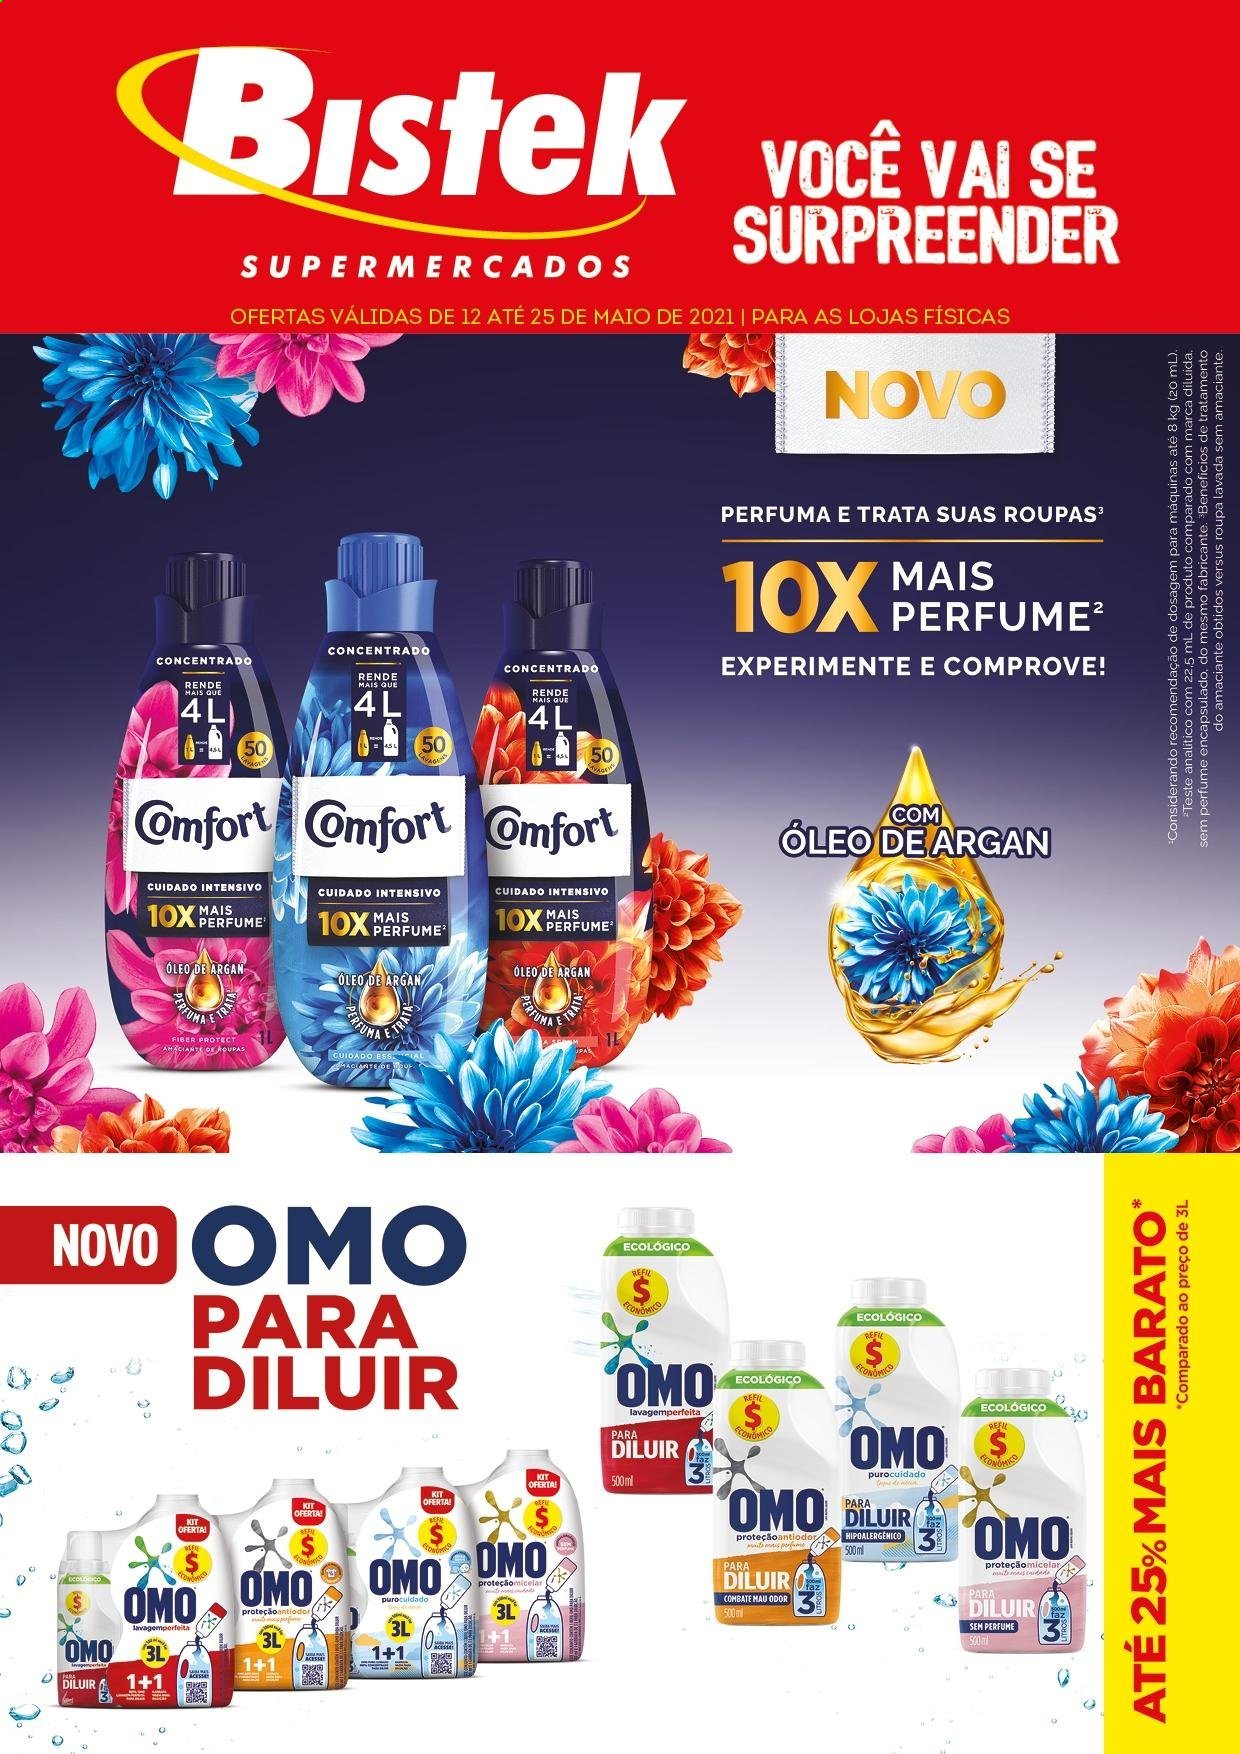 thumbnail - Folheto Bistek Supermercados - 12/05/2021 - 25/05/2021 - Produtos em promoção - amaciante, OMO, perfume. Página 1.